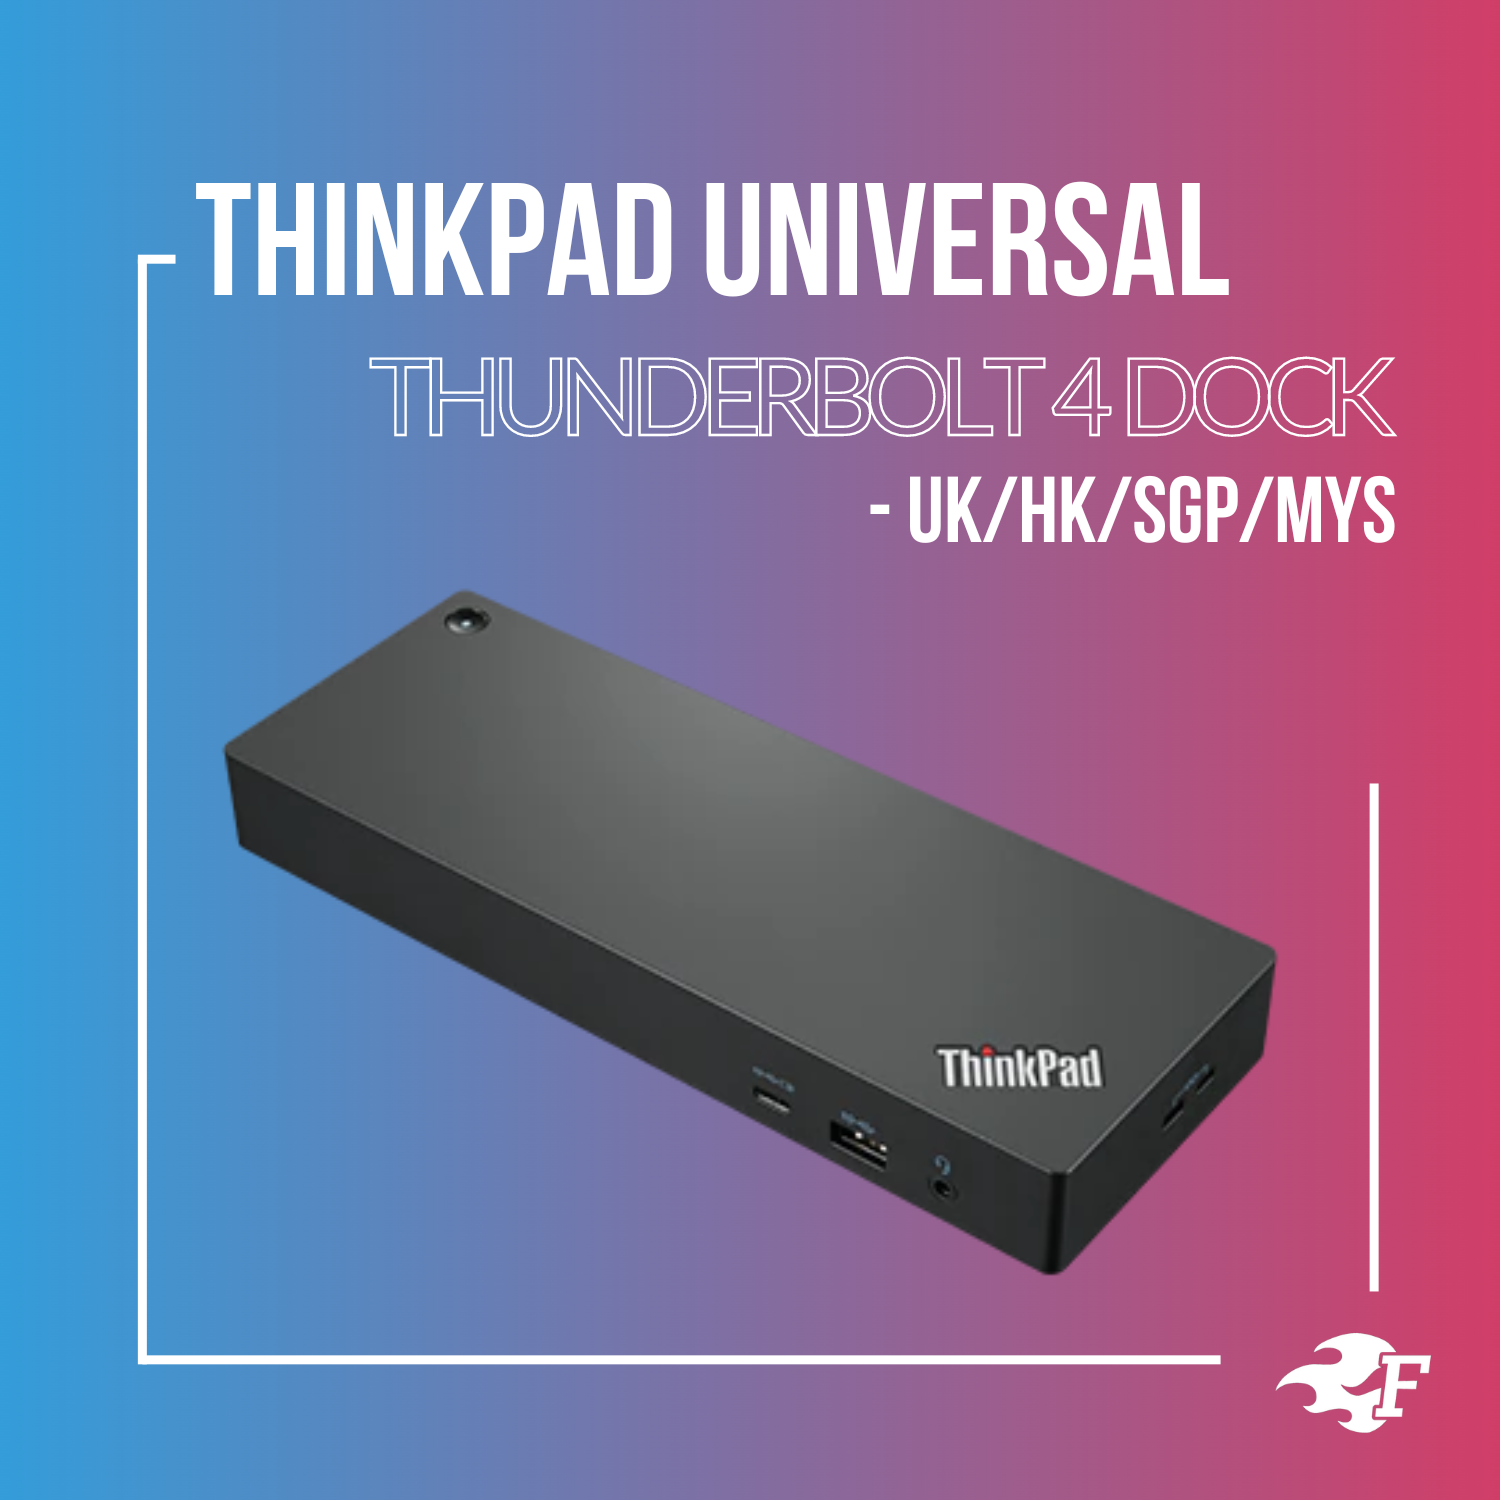 ThinkPad Thunderbolt 4 Dock